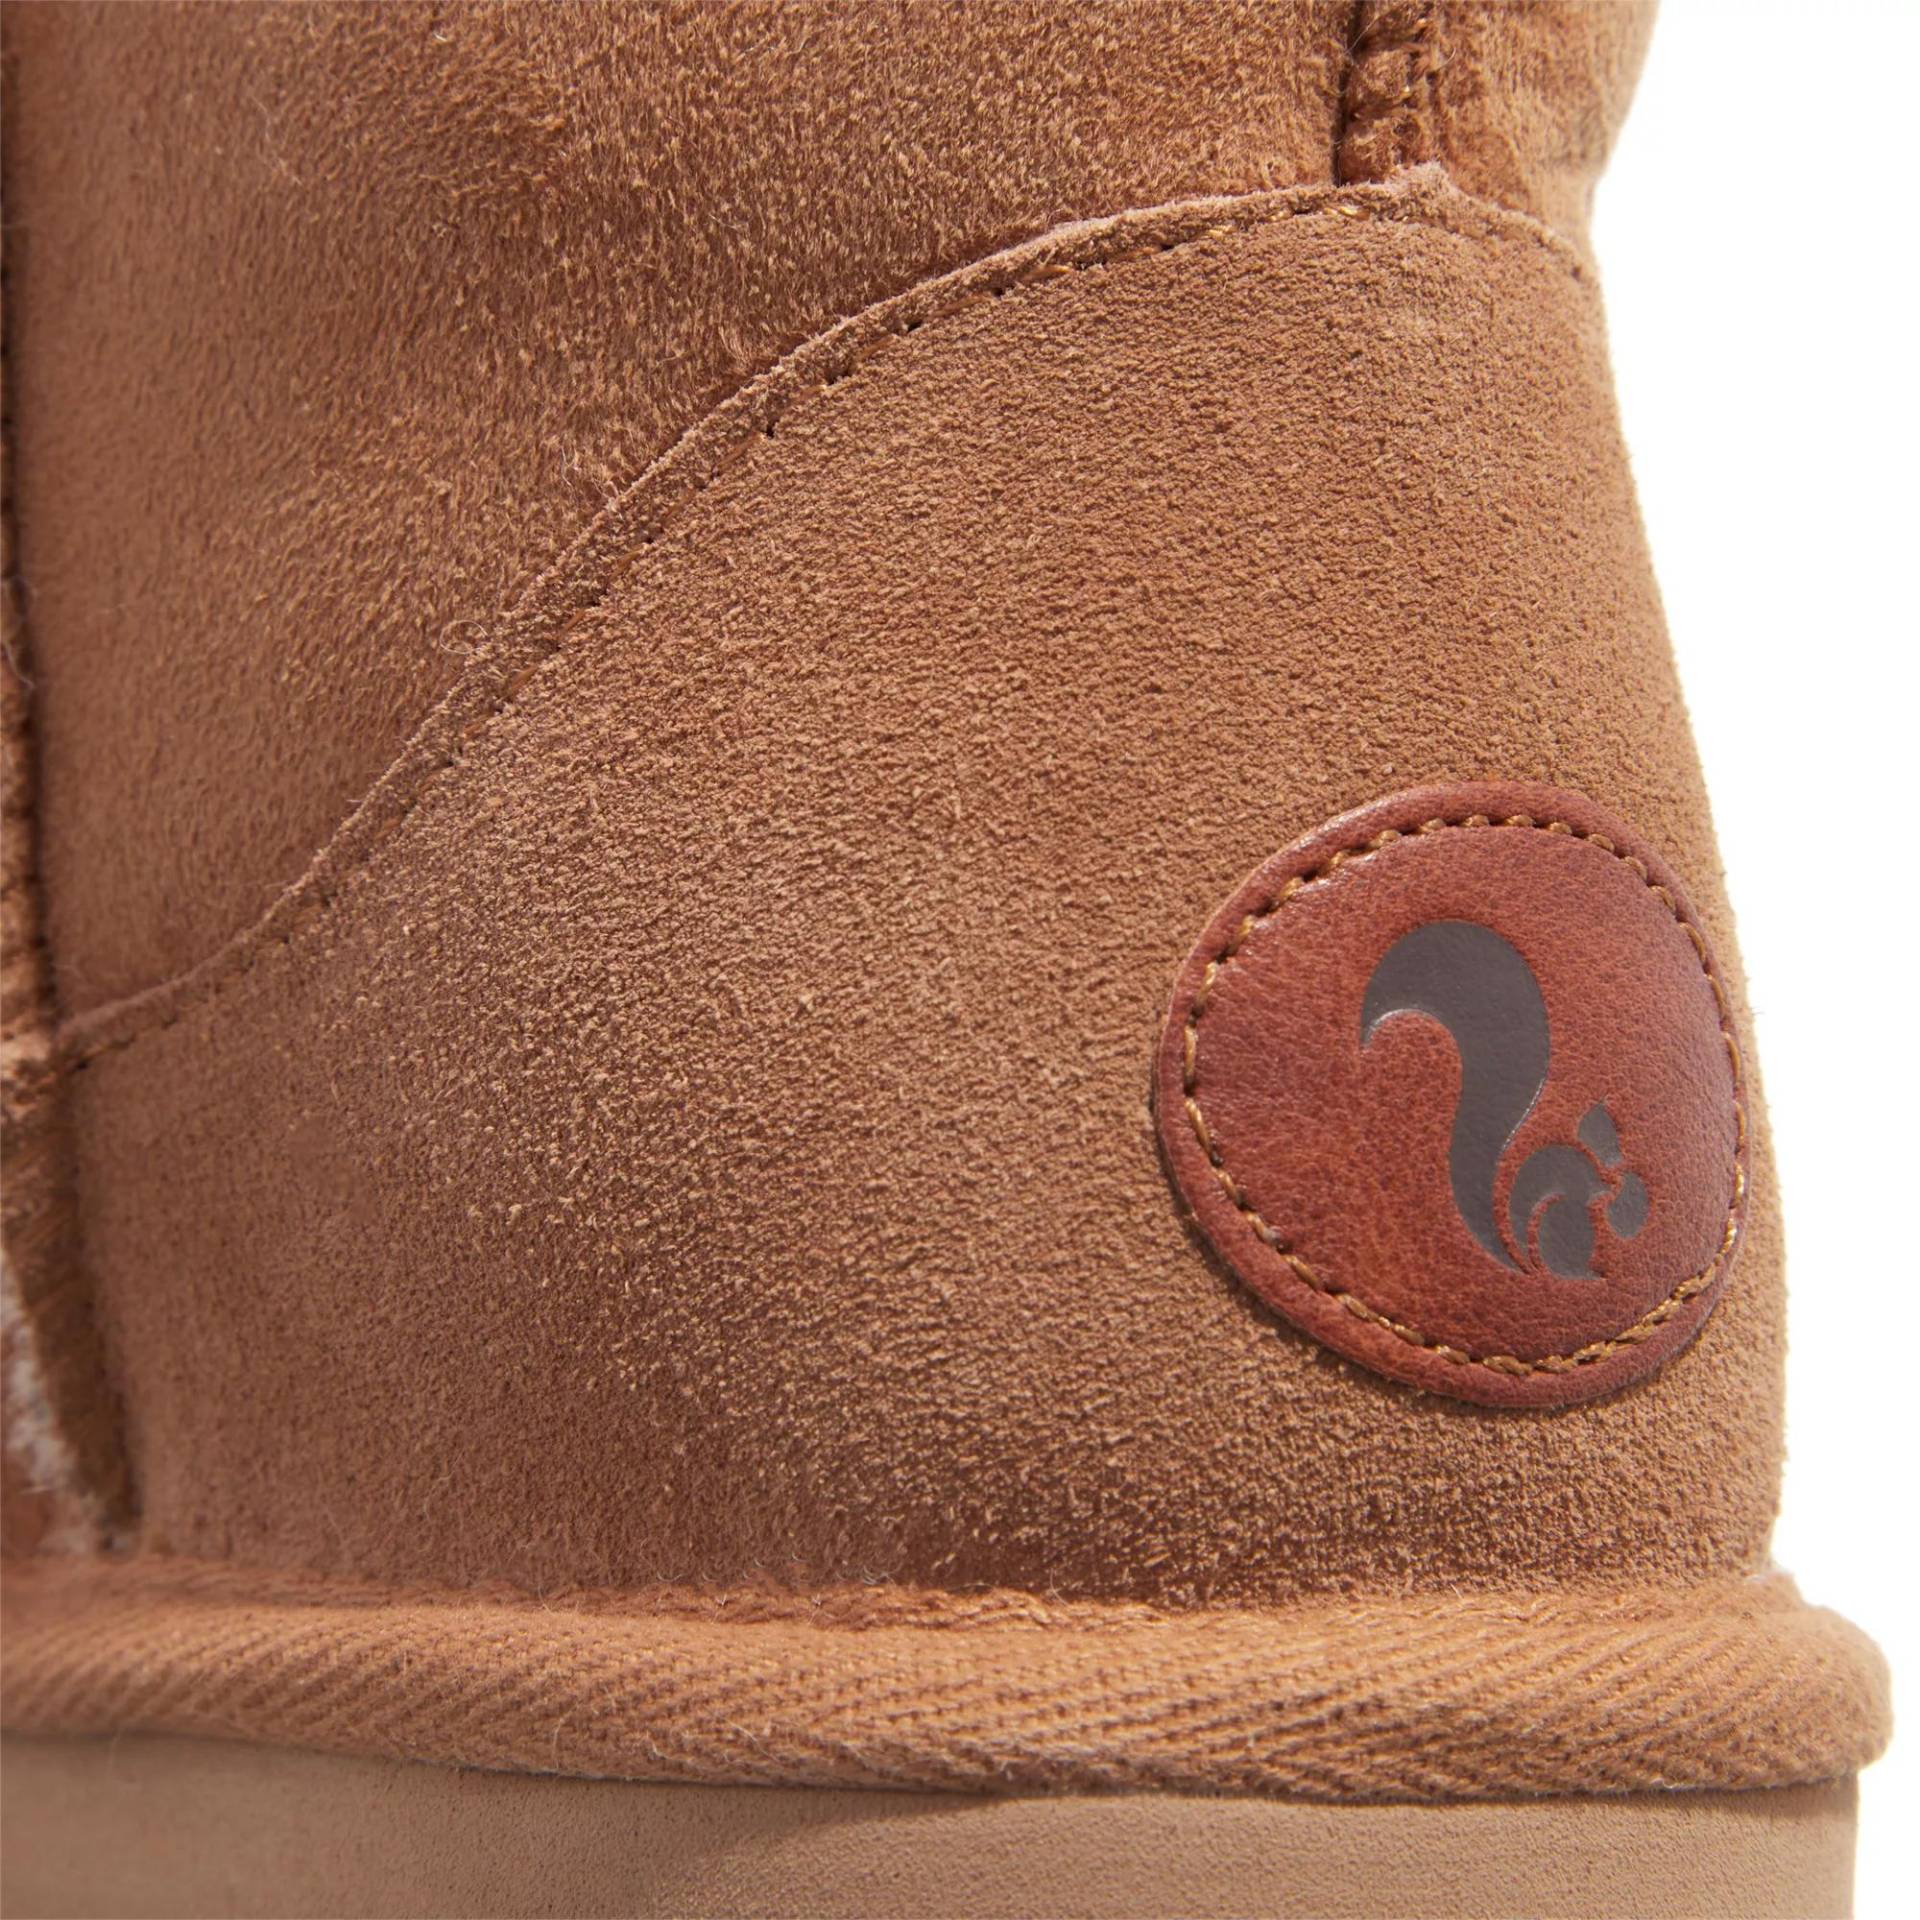 thies Sneakers - thies 1856 ® Classic Sheepskin boot cashew (W) - Gr. 38 (EU) - in Braun - für Damen von thies